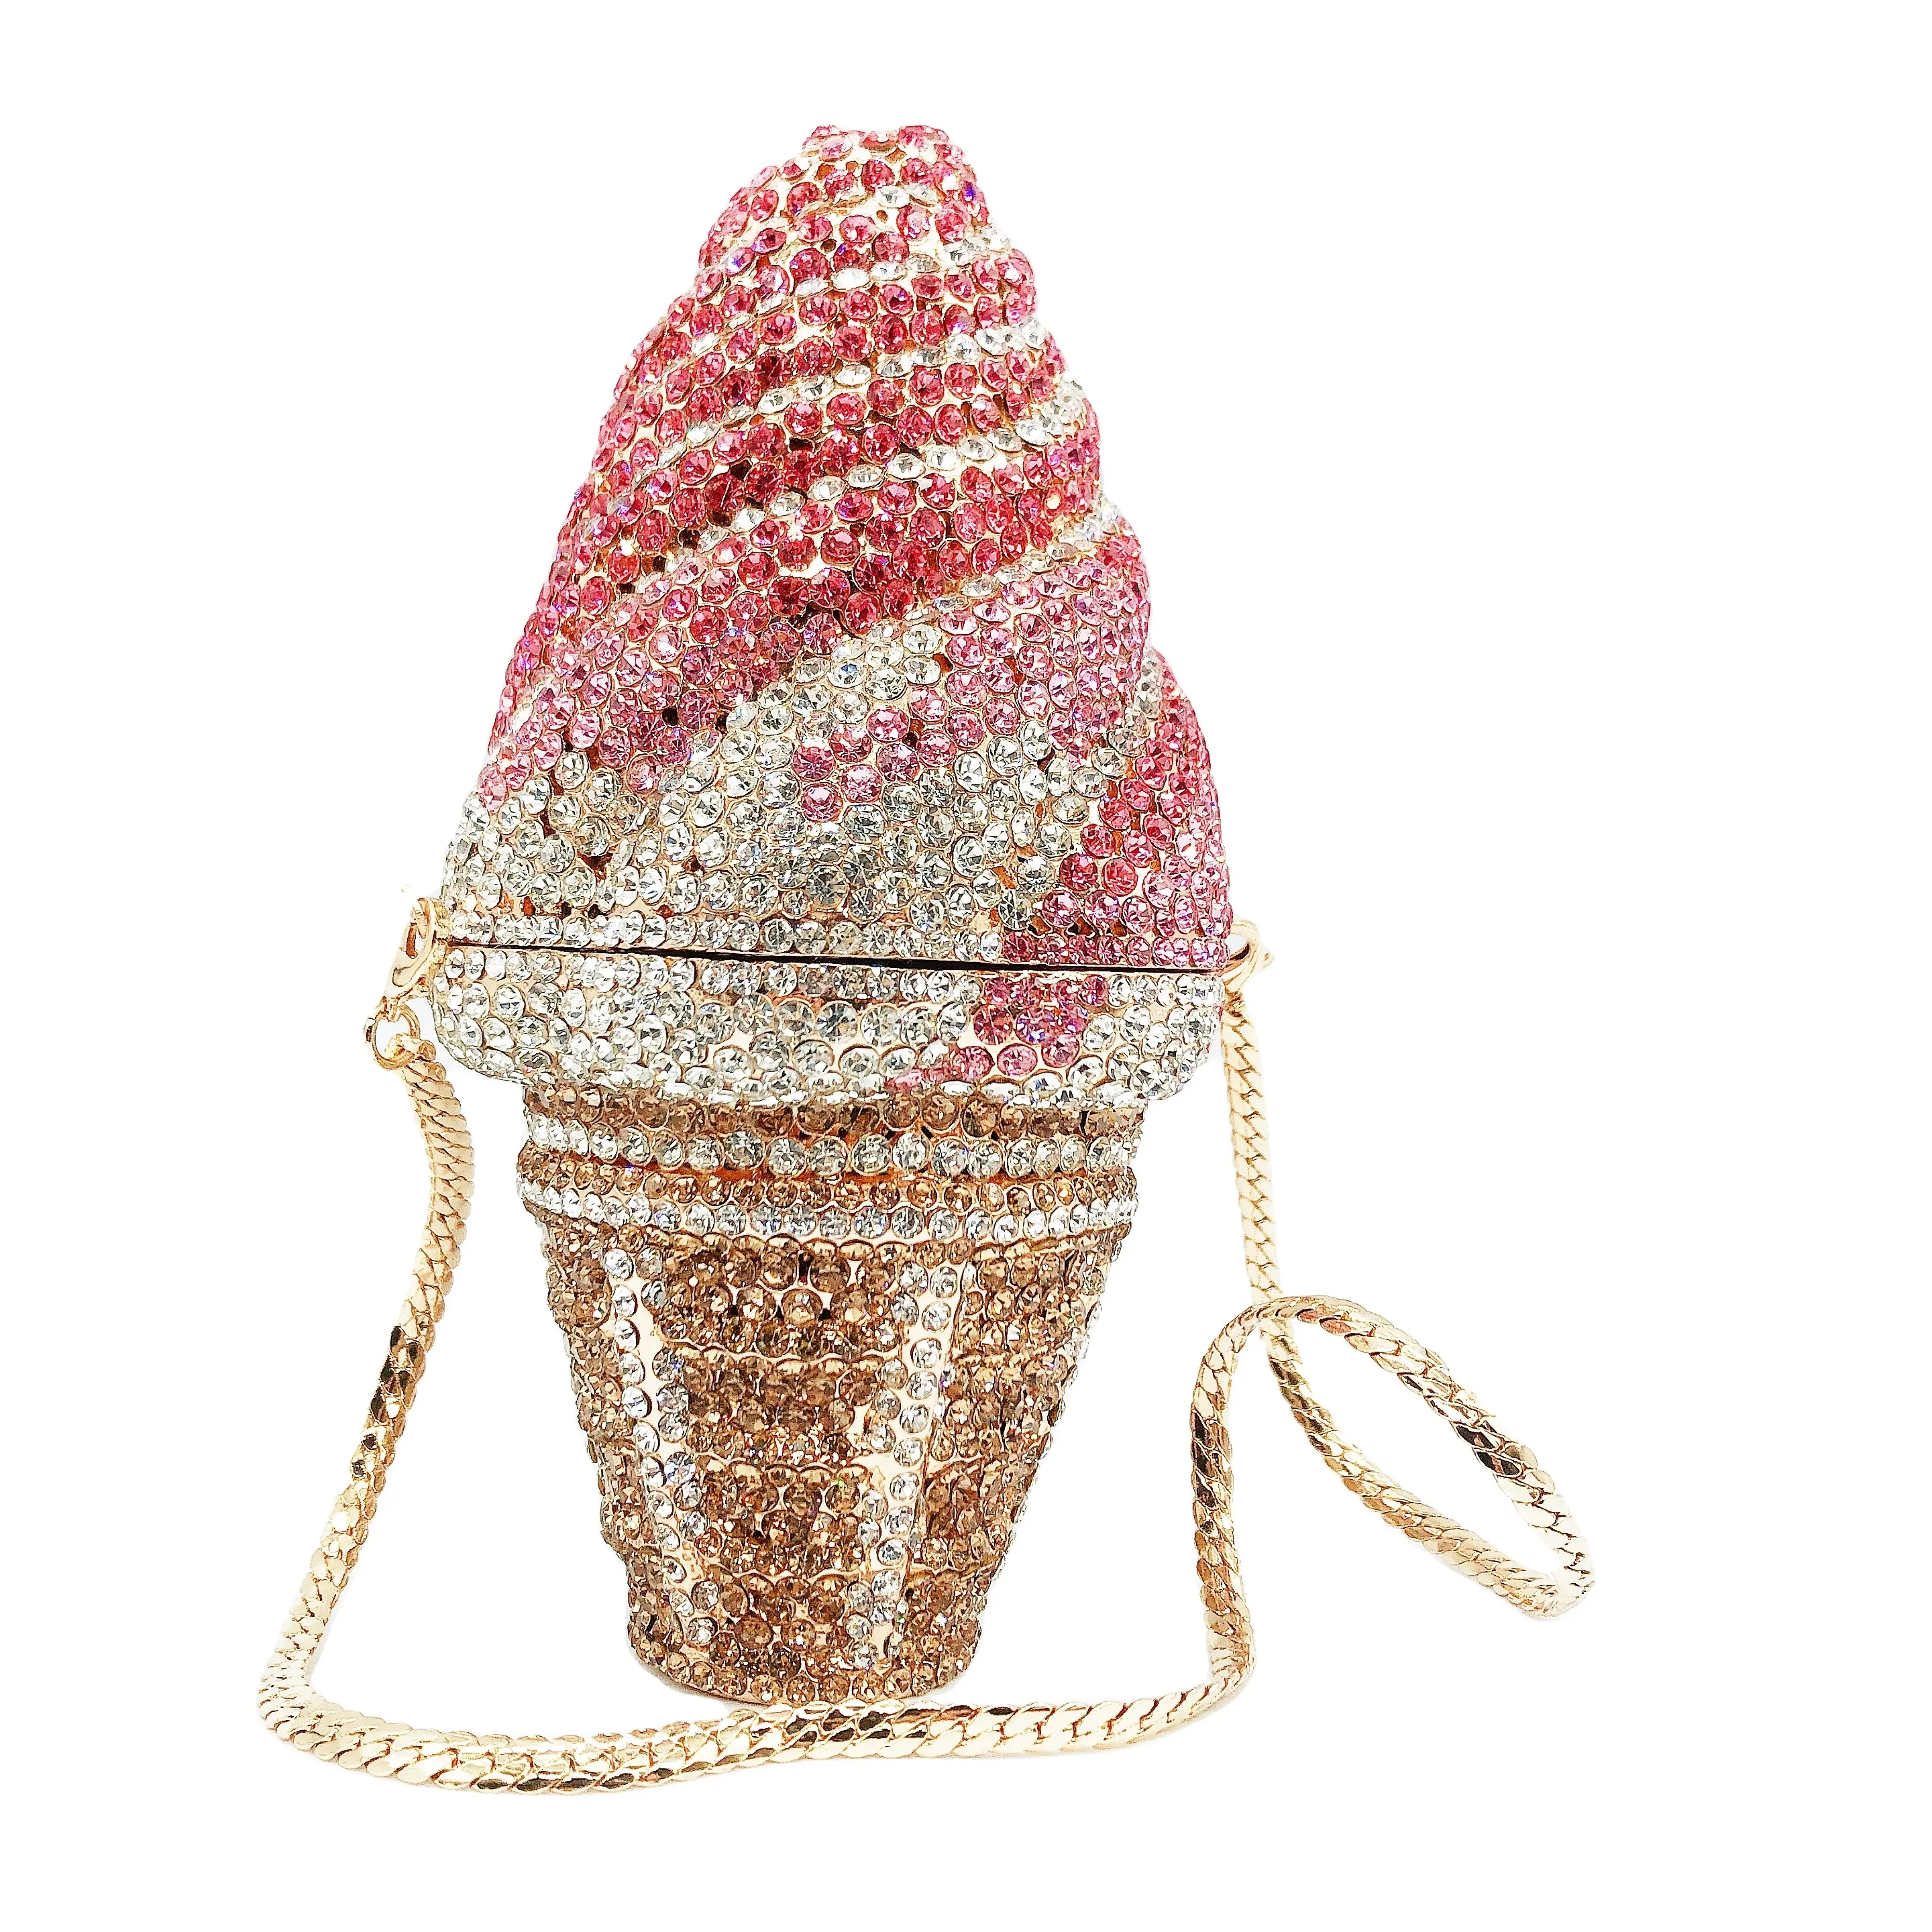 Venta directa de forma única de helado con incrustaciones de diamantes vestido de fiesta de cumpleaños bolso de hombro pequeños bolsos de noche